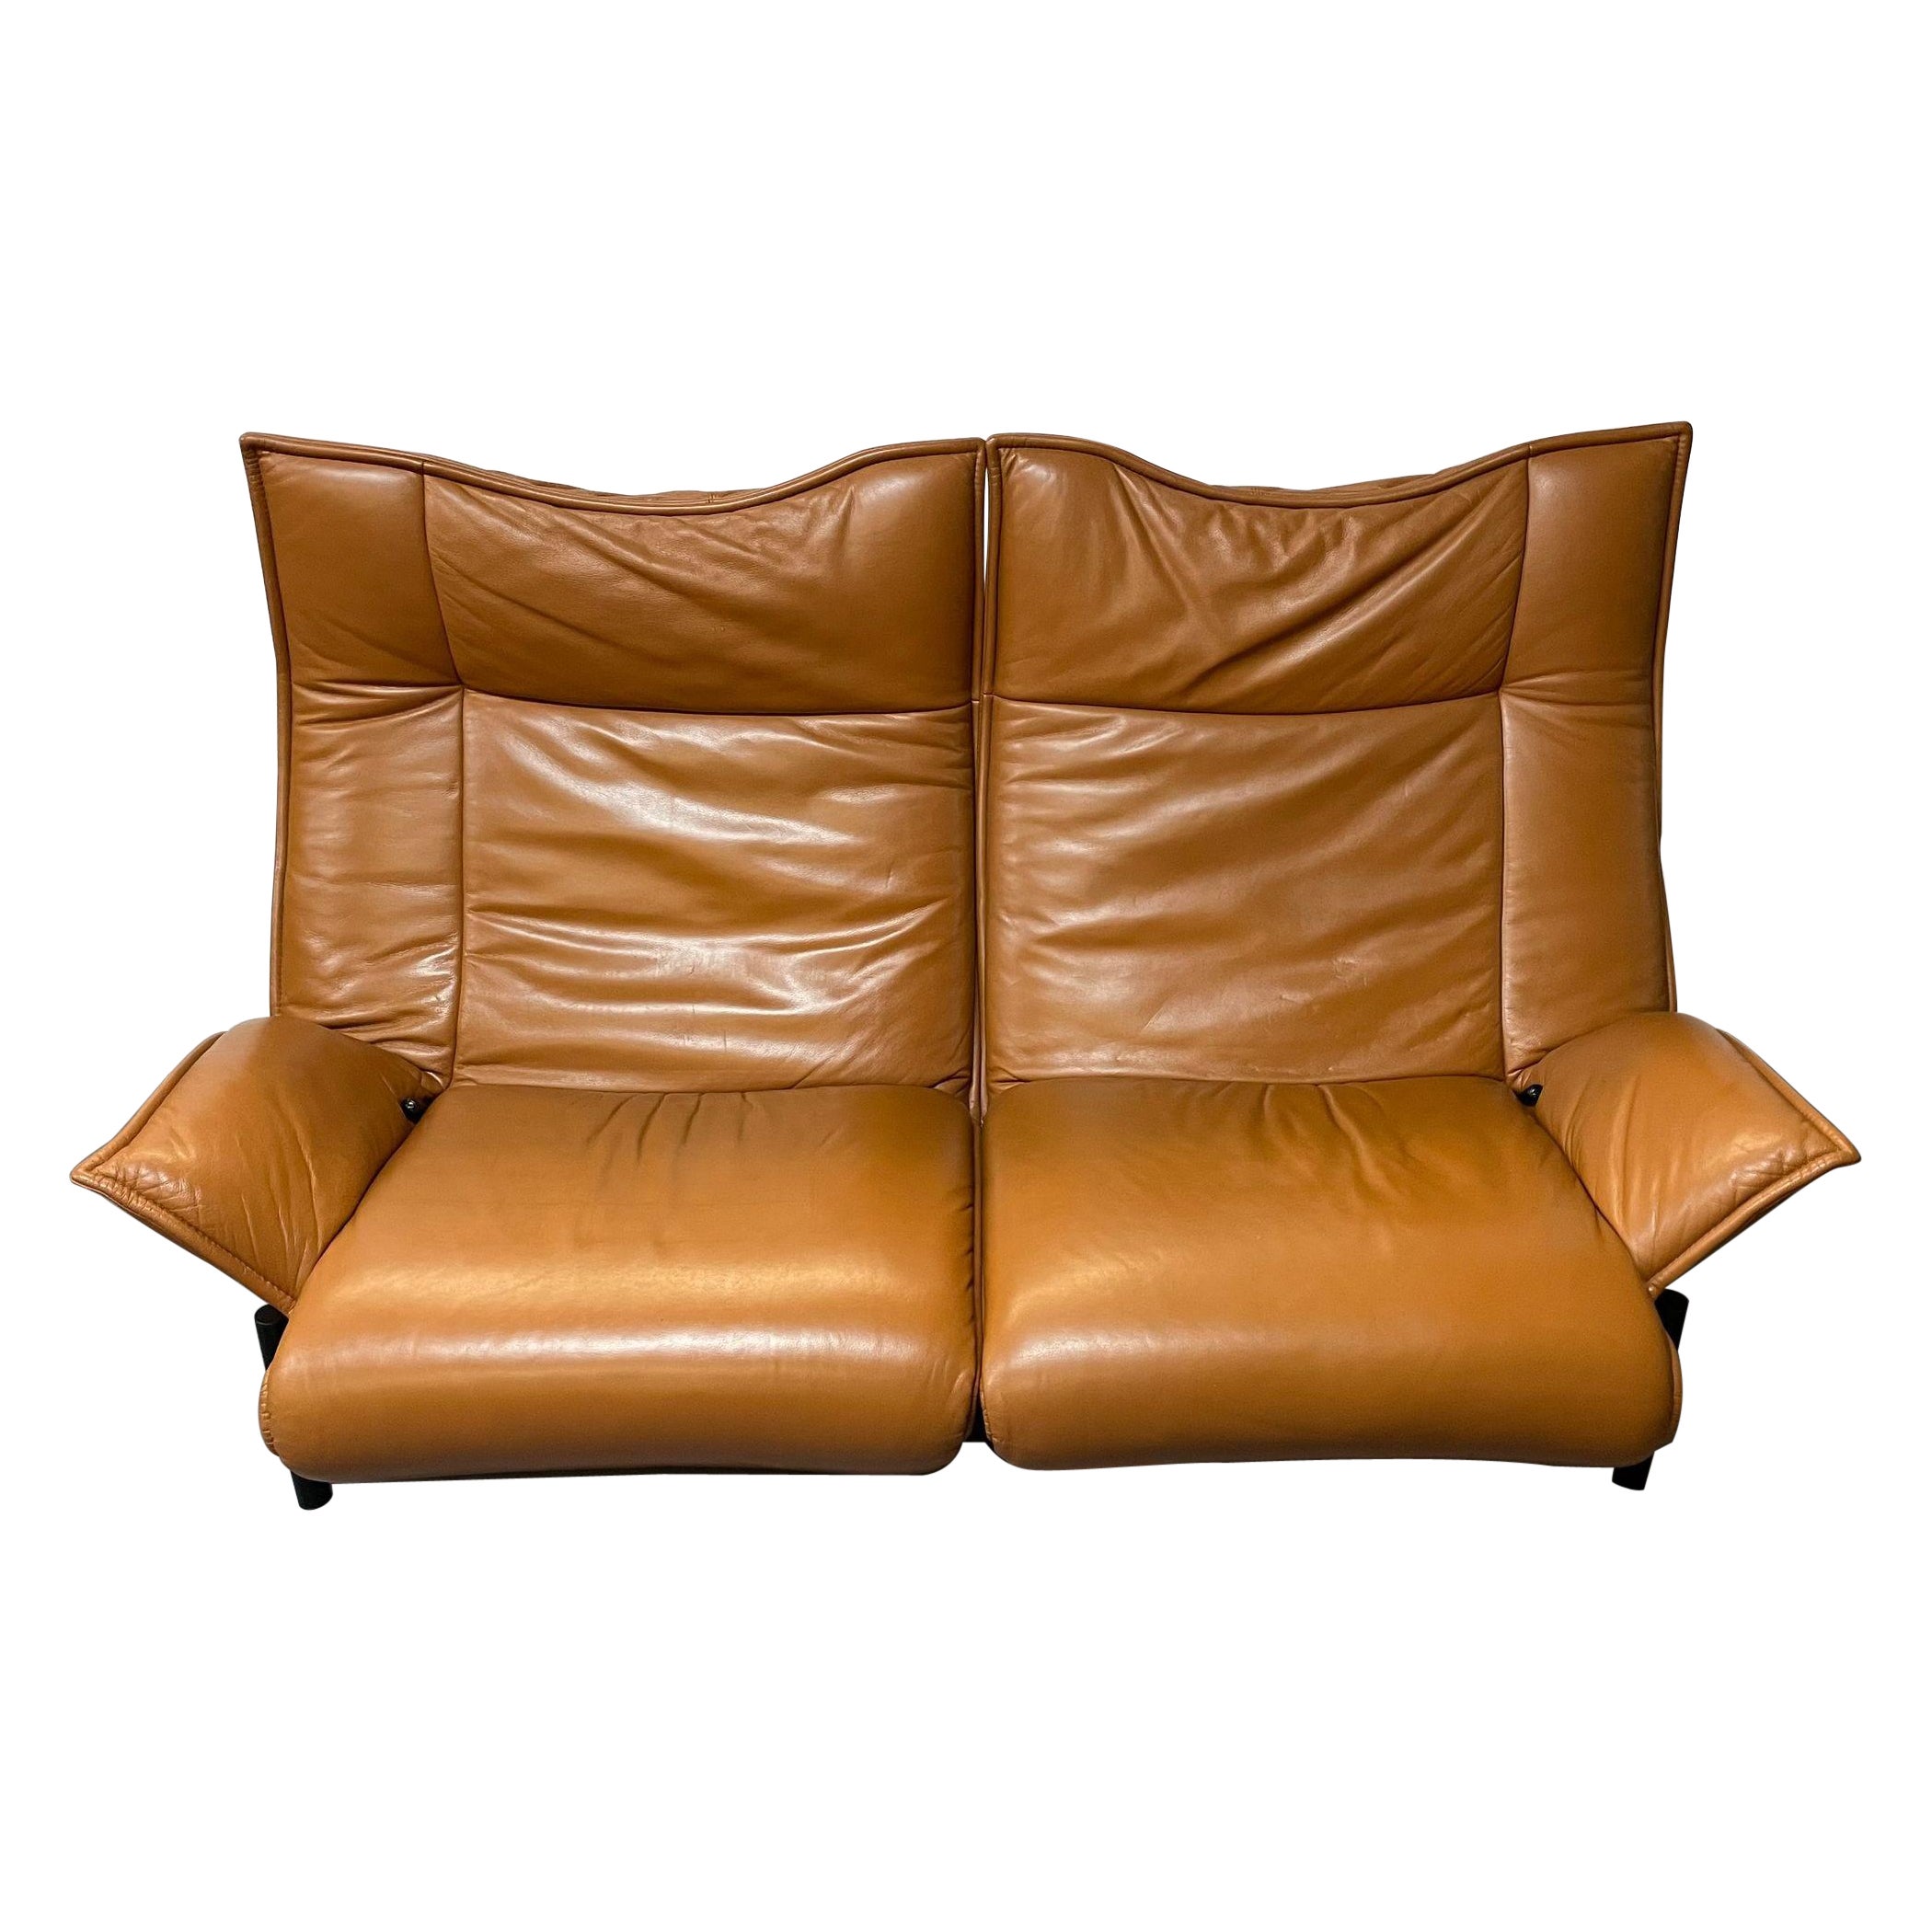 Vico Magistretti for Cassina Veranda Sofa, Two-Seater, Leather, Italian Modern For Sale